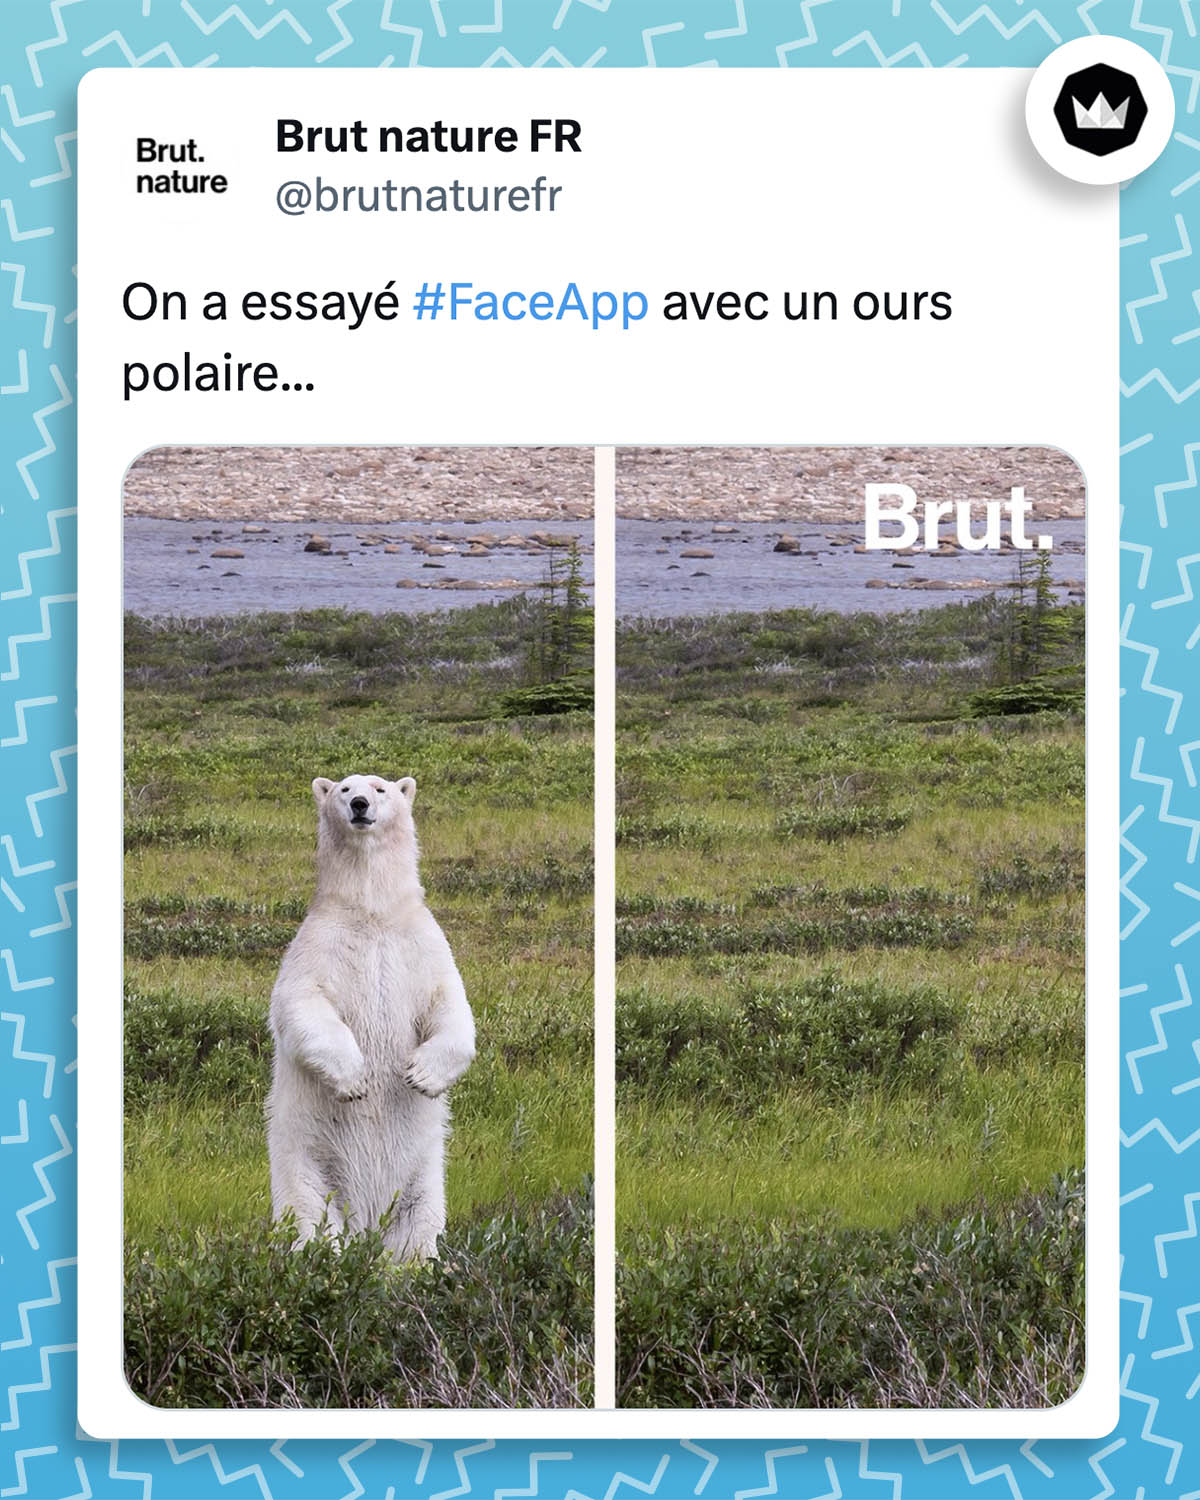 Tweet de @brutnaturefr : 
"On a essayé #faceapp avec un ours polaire..."
La première image représente un ours polaire. Et sur la seconde image, l'ours a disparu.